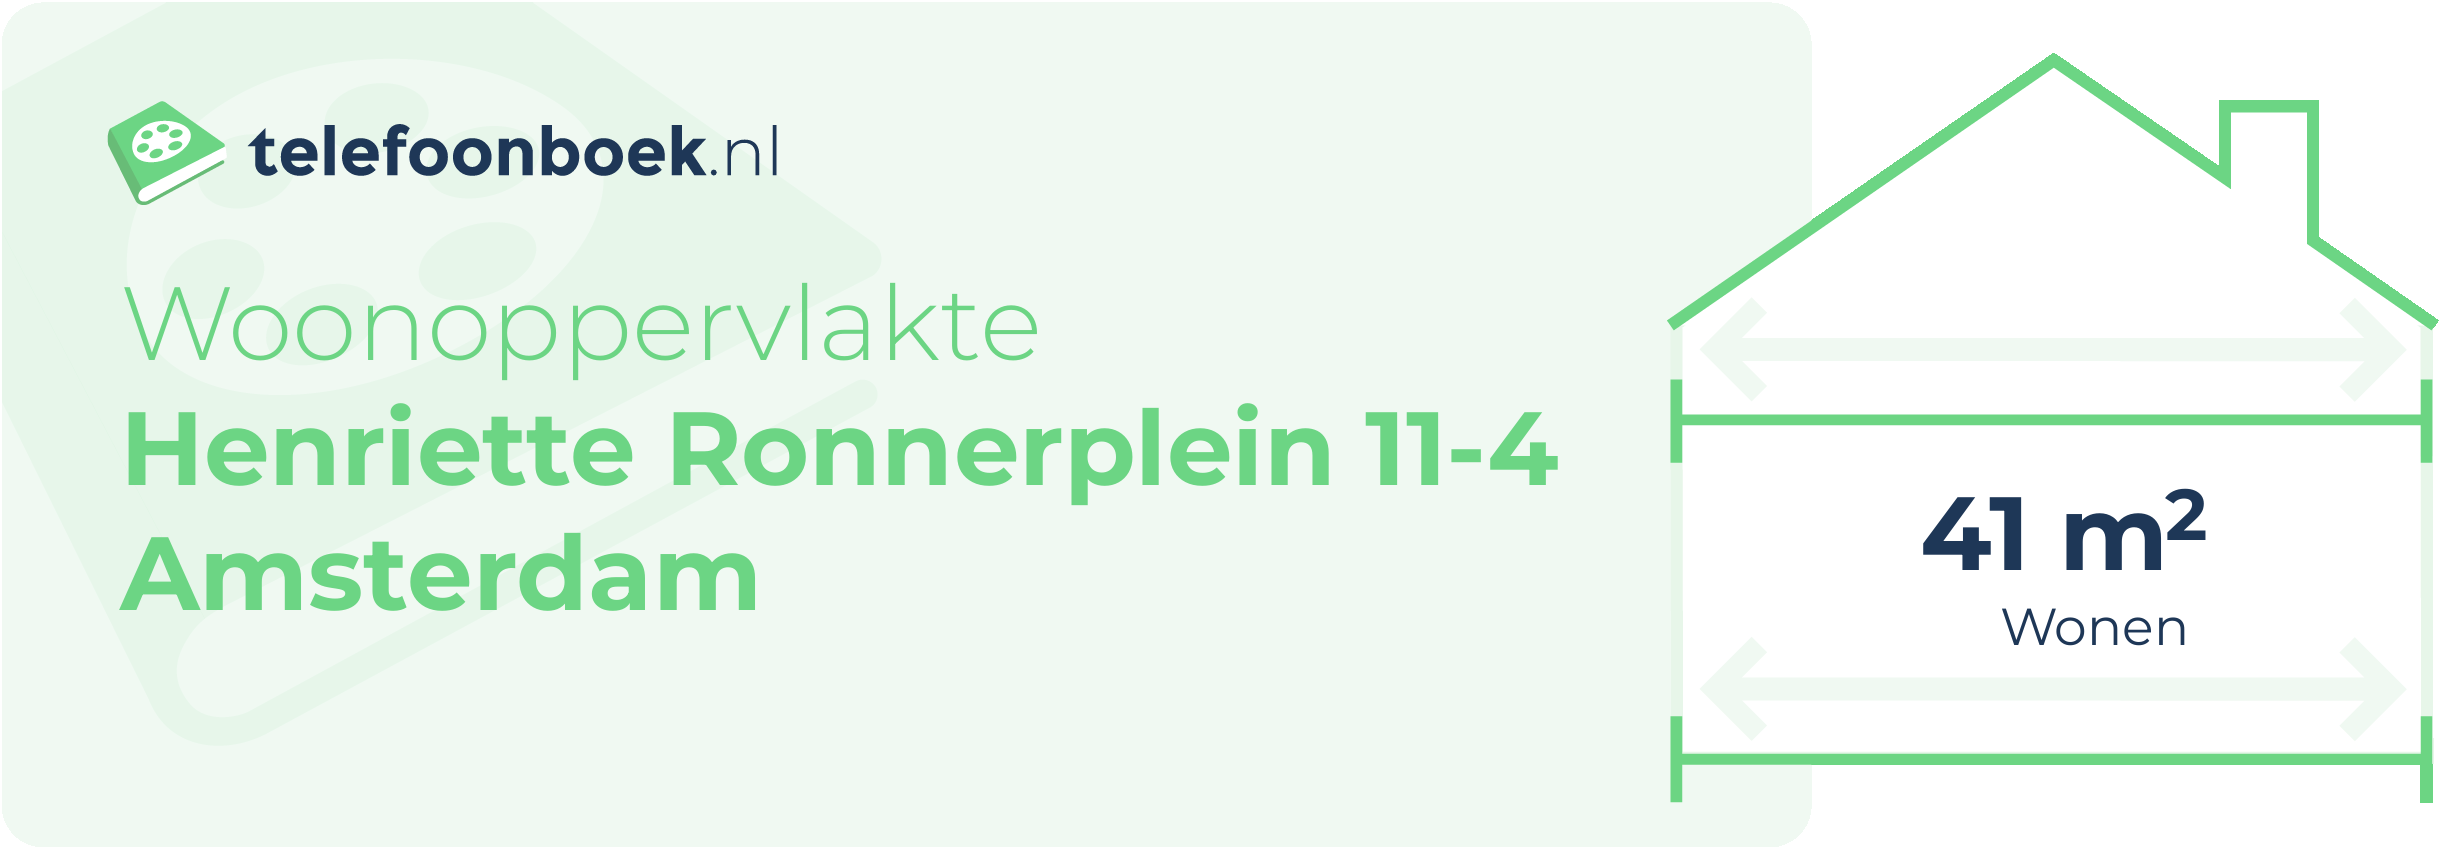 Woonoppervlakte Henriette Ronnerplein 11-4 Amsterdam